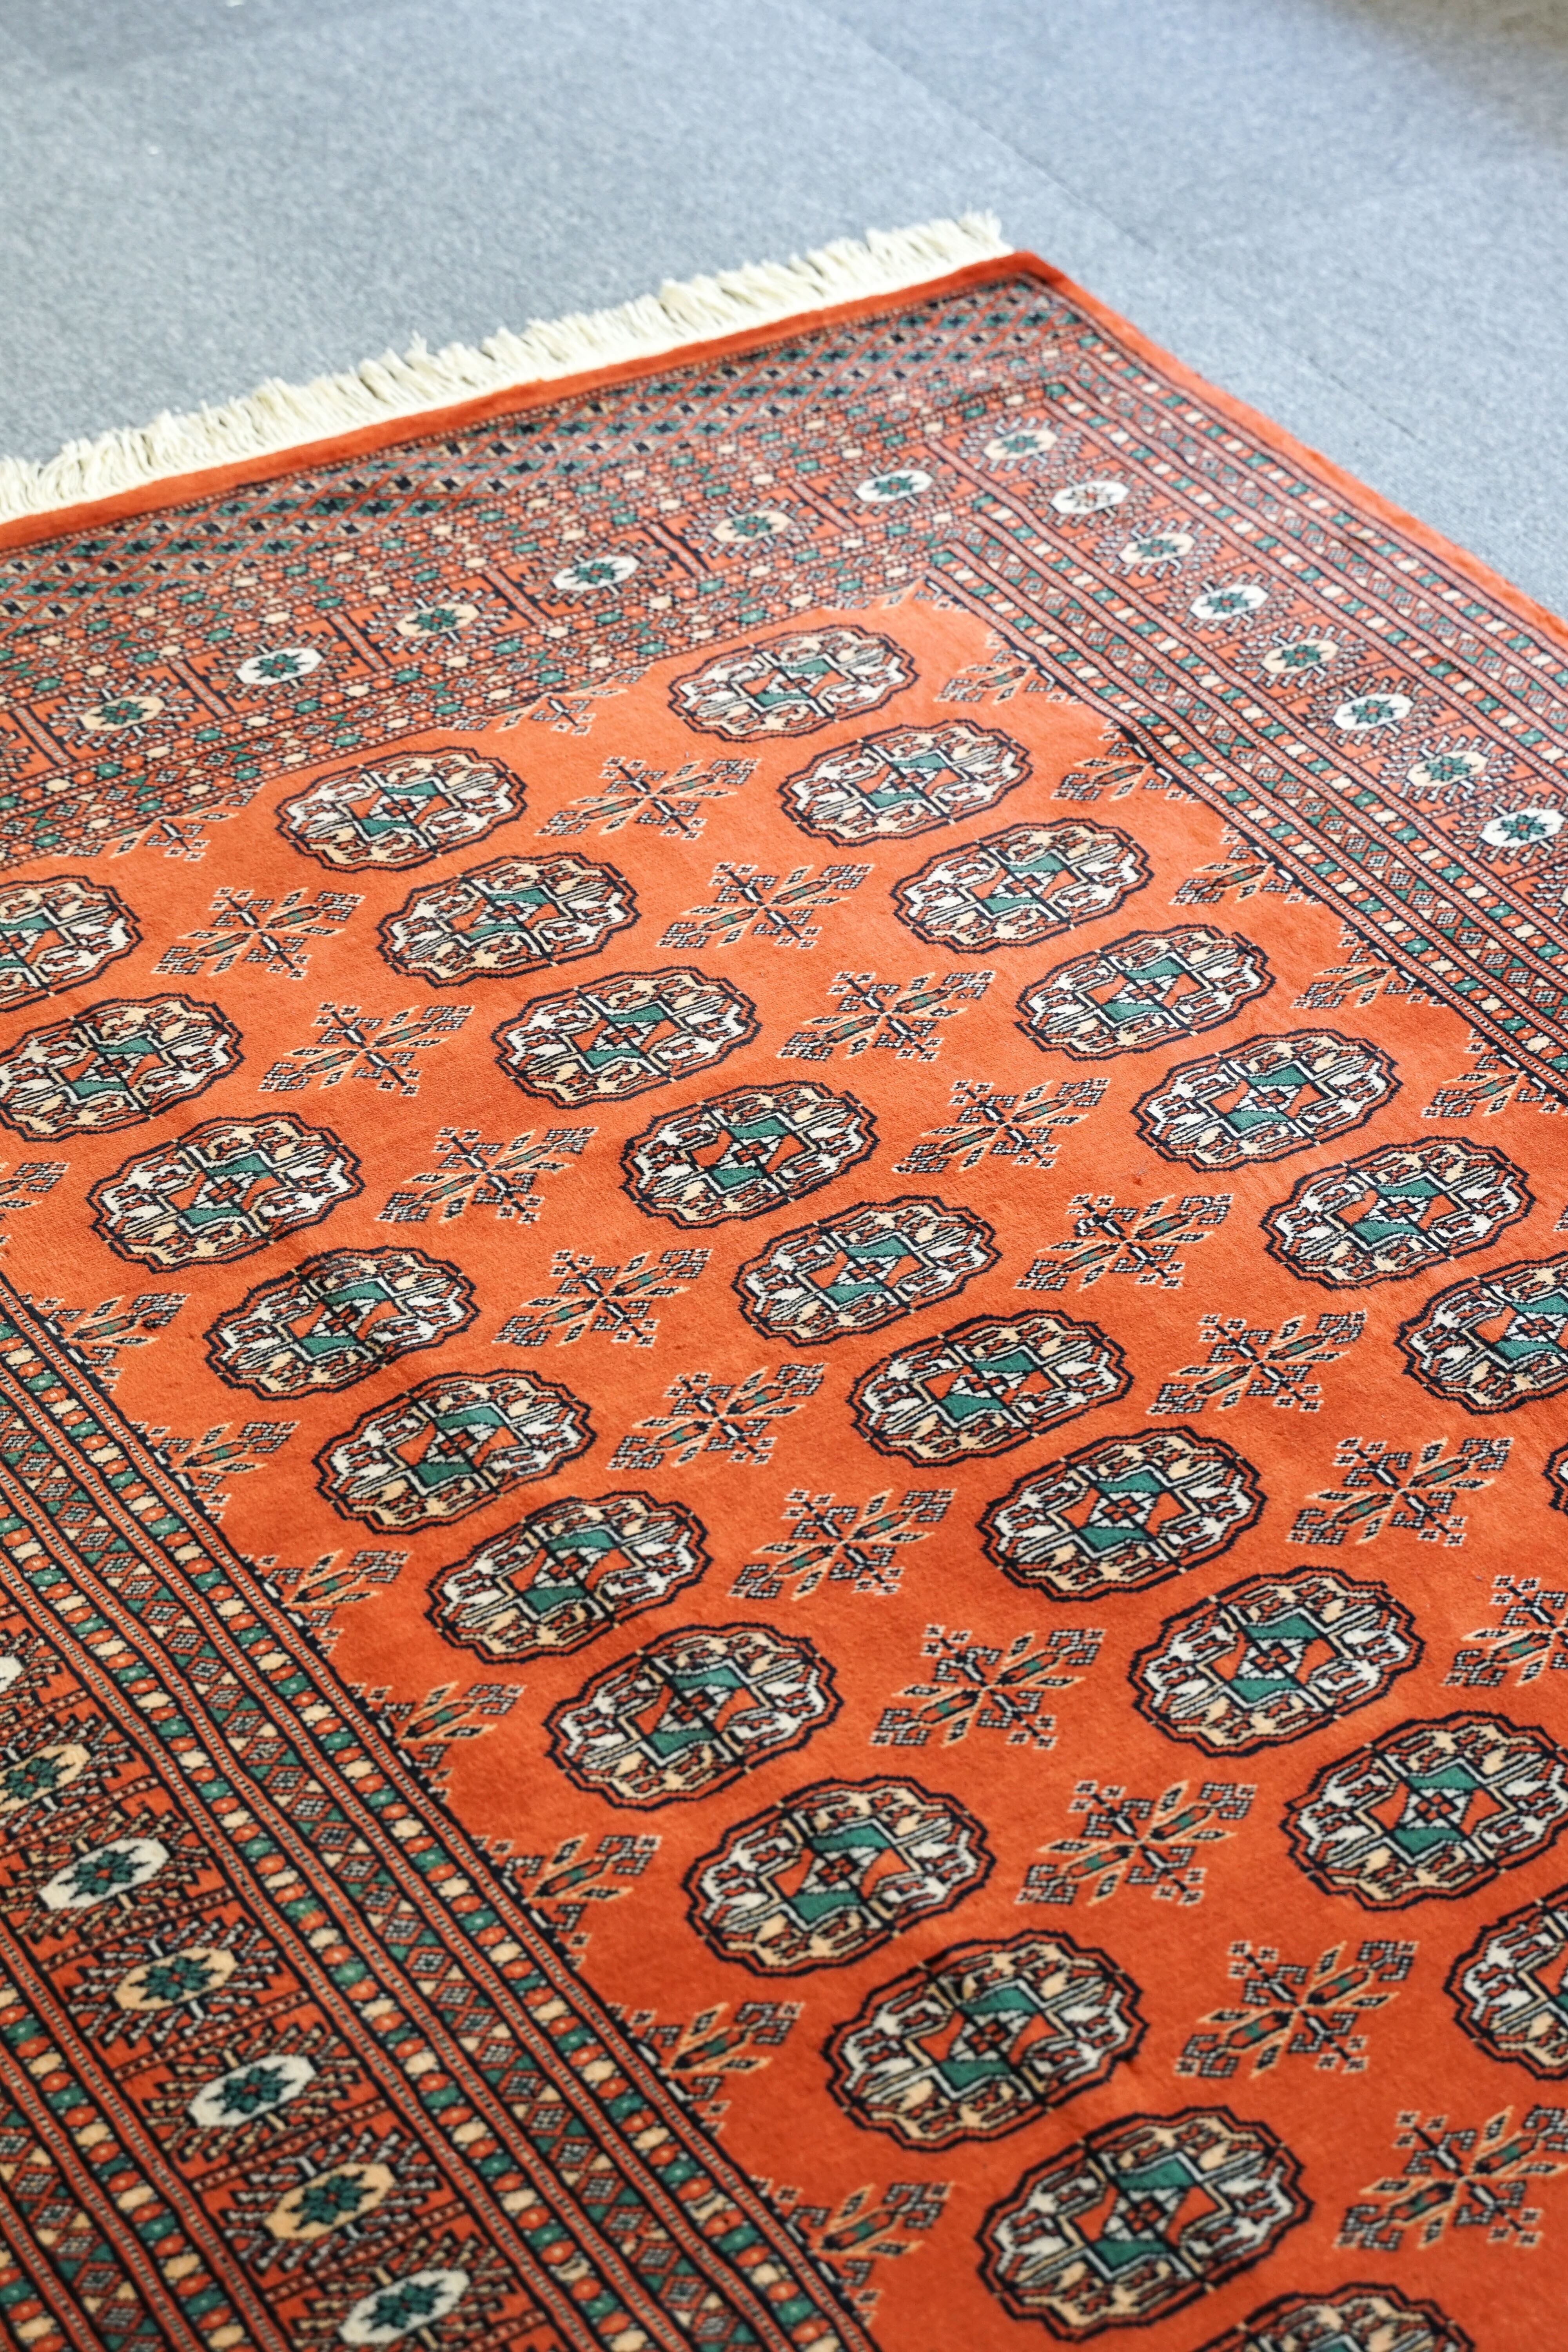 162×125cm【パキスタン手織り絨毯】 Decorworks